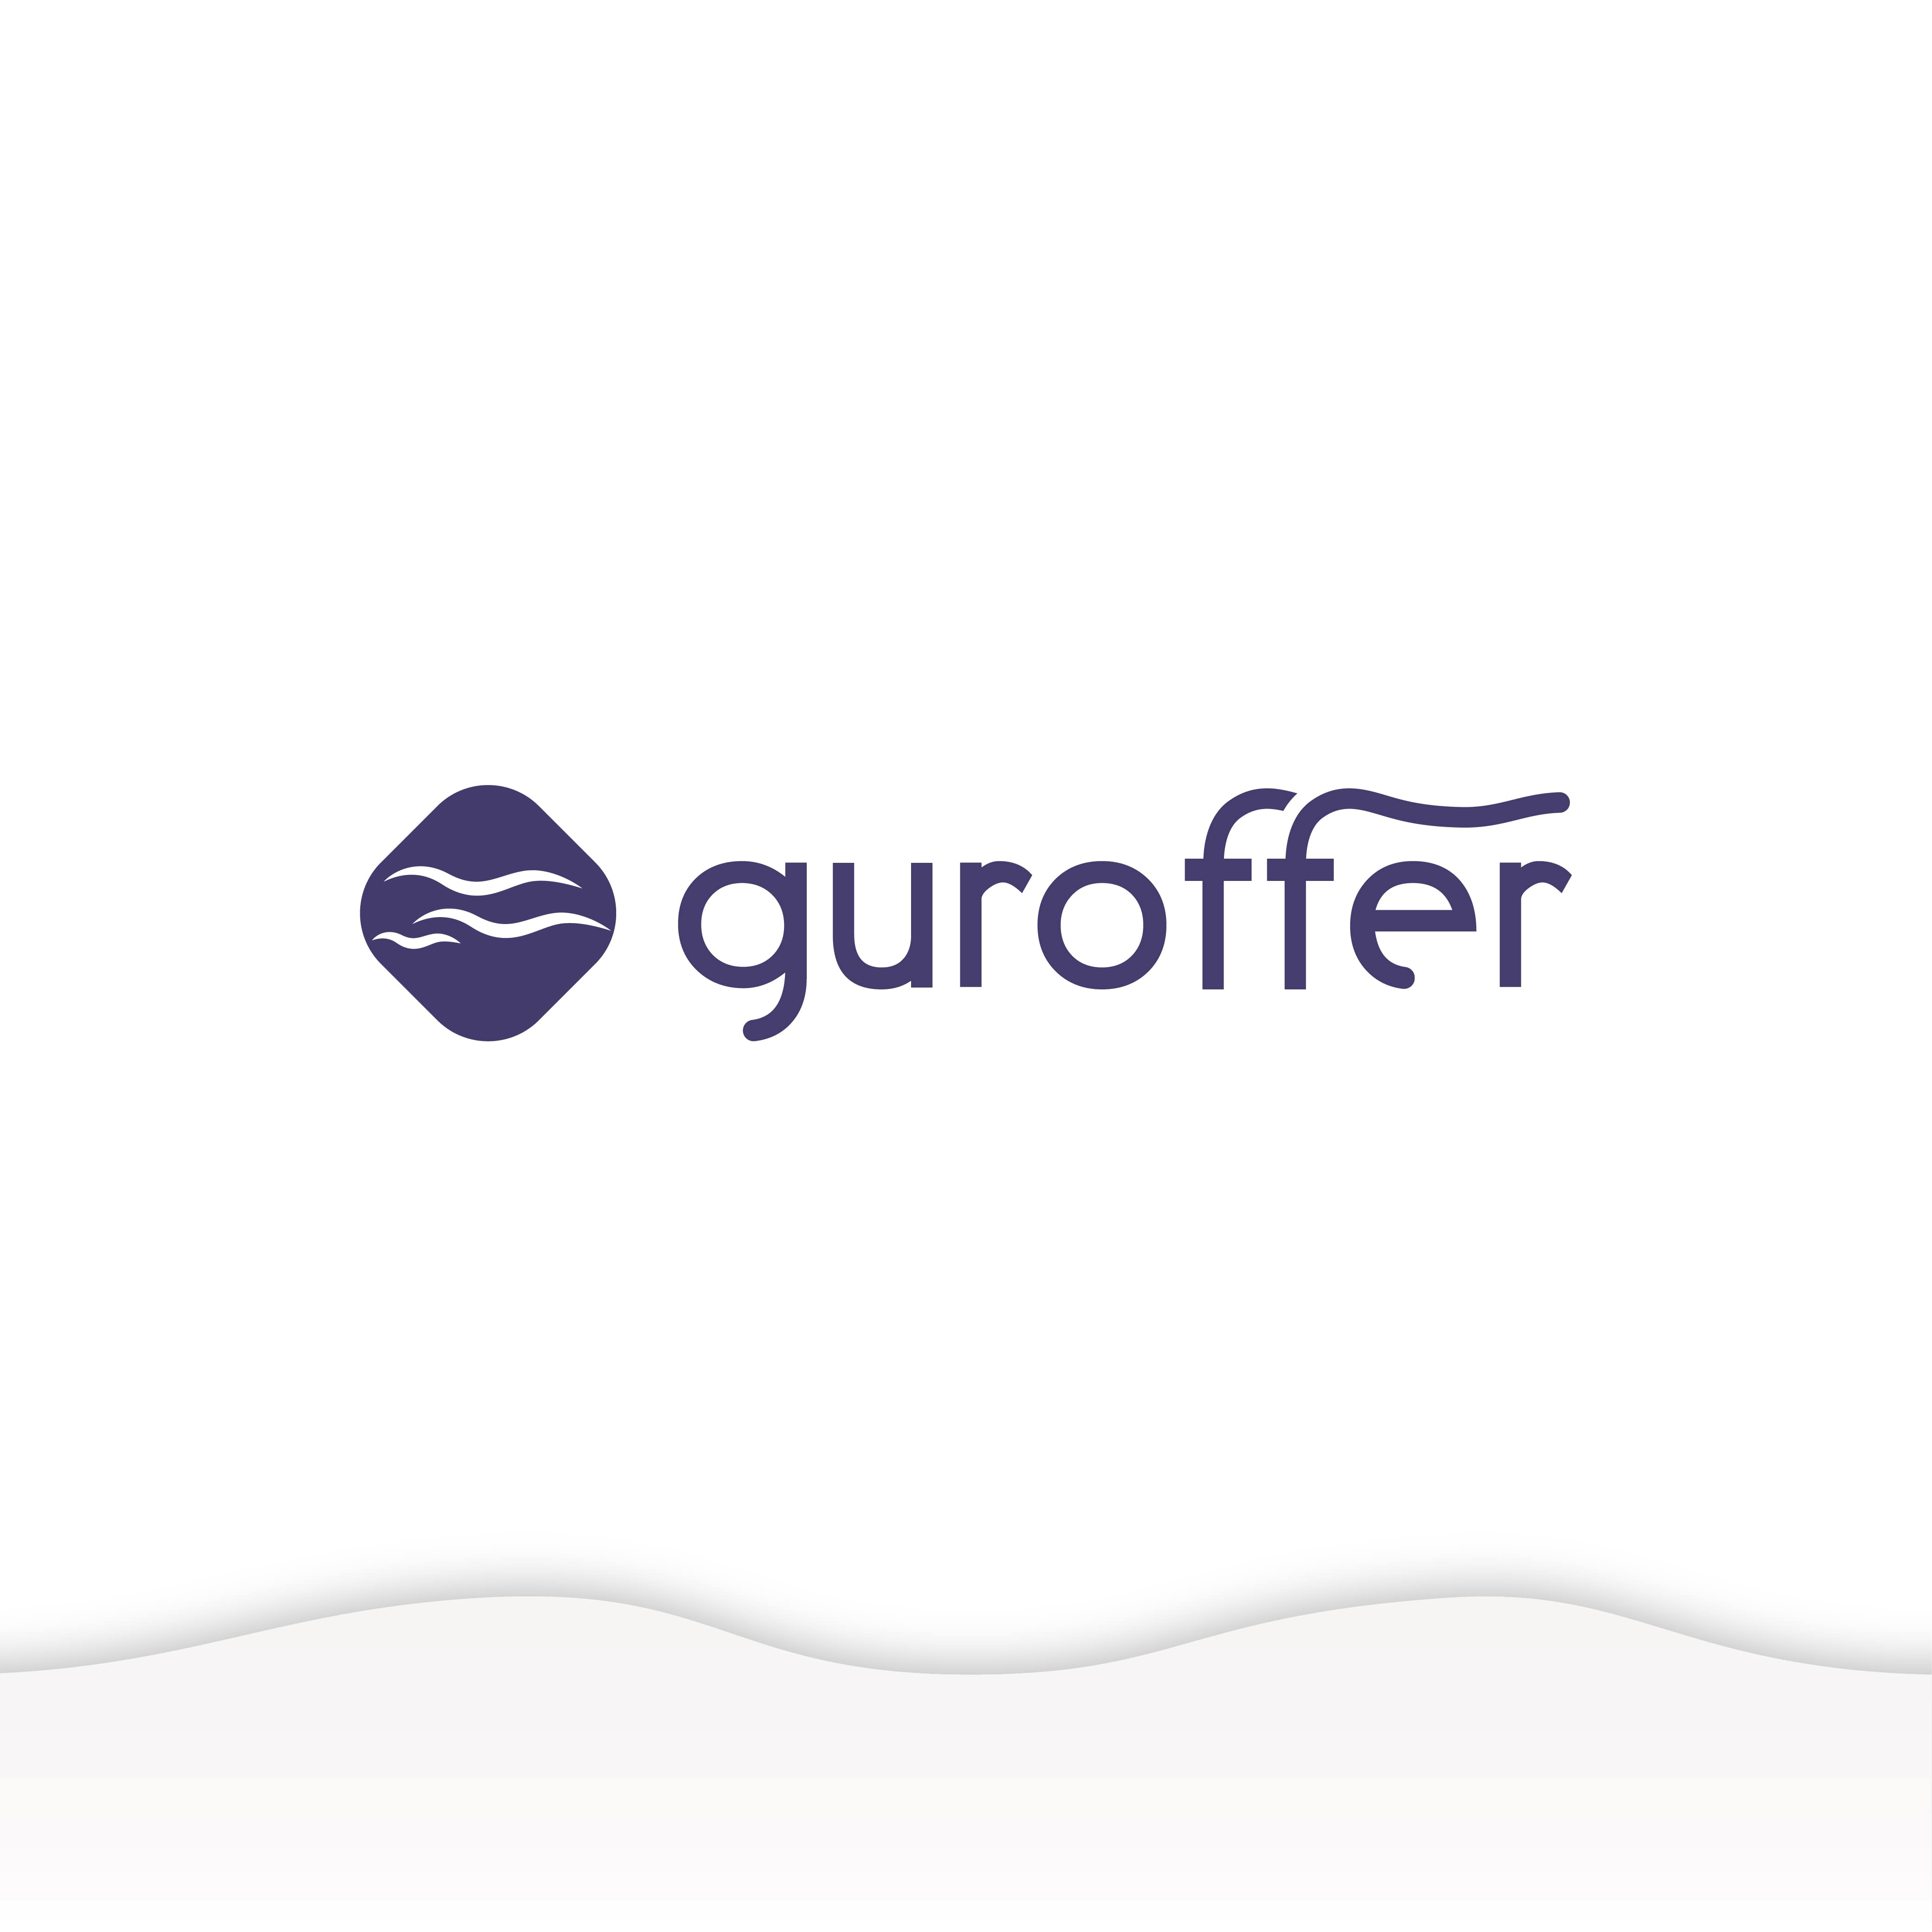 Guroffer Logo Tasarımı